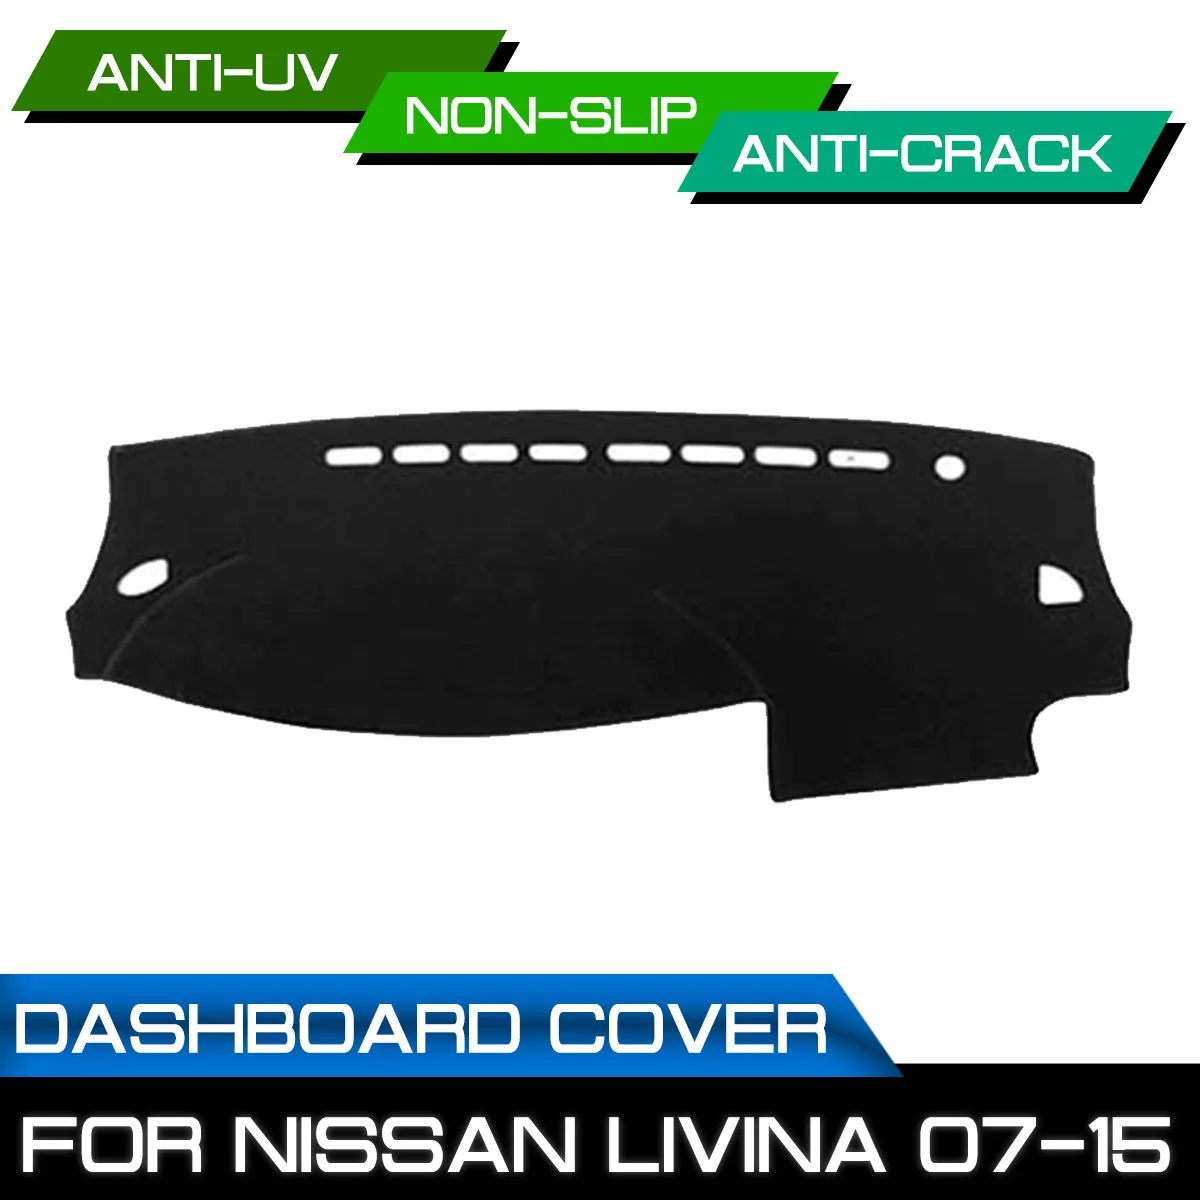 

Коврик для приборной панели автомобиля для Nissan LIVINA 2007 2008 2009 2010 2011-2015, нескользящий коврик для приборной панели с защитой от грязи и ультрафиолета